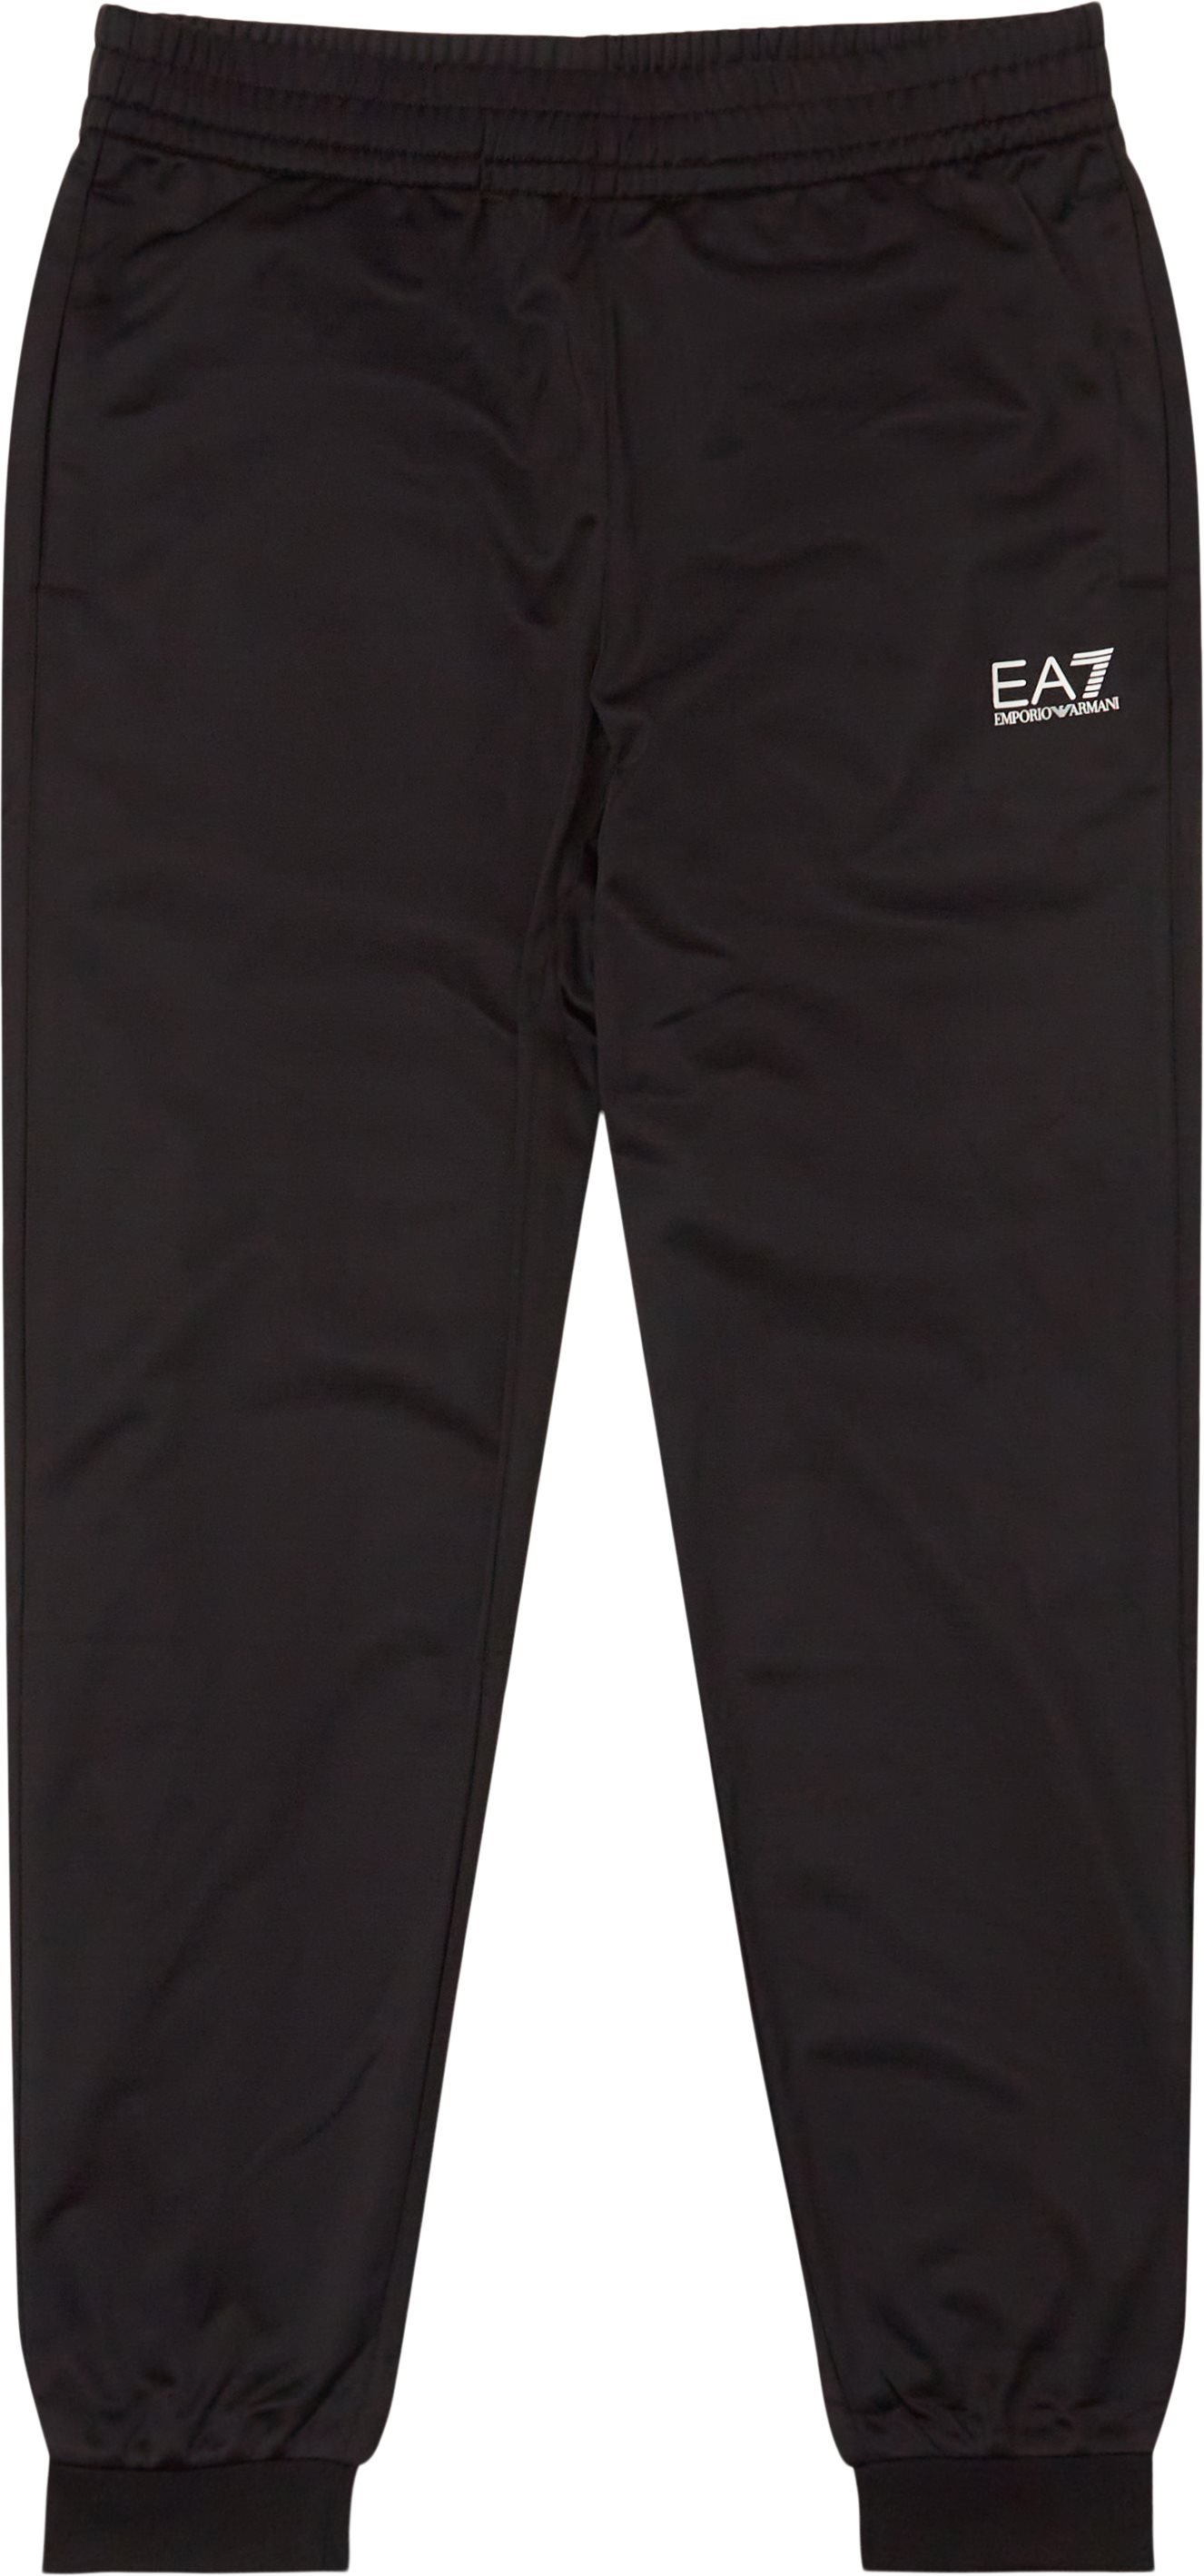 Pj08z-3lpv63 Track Pant - Trousers - Regular fit - Black